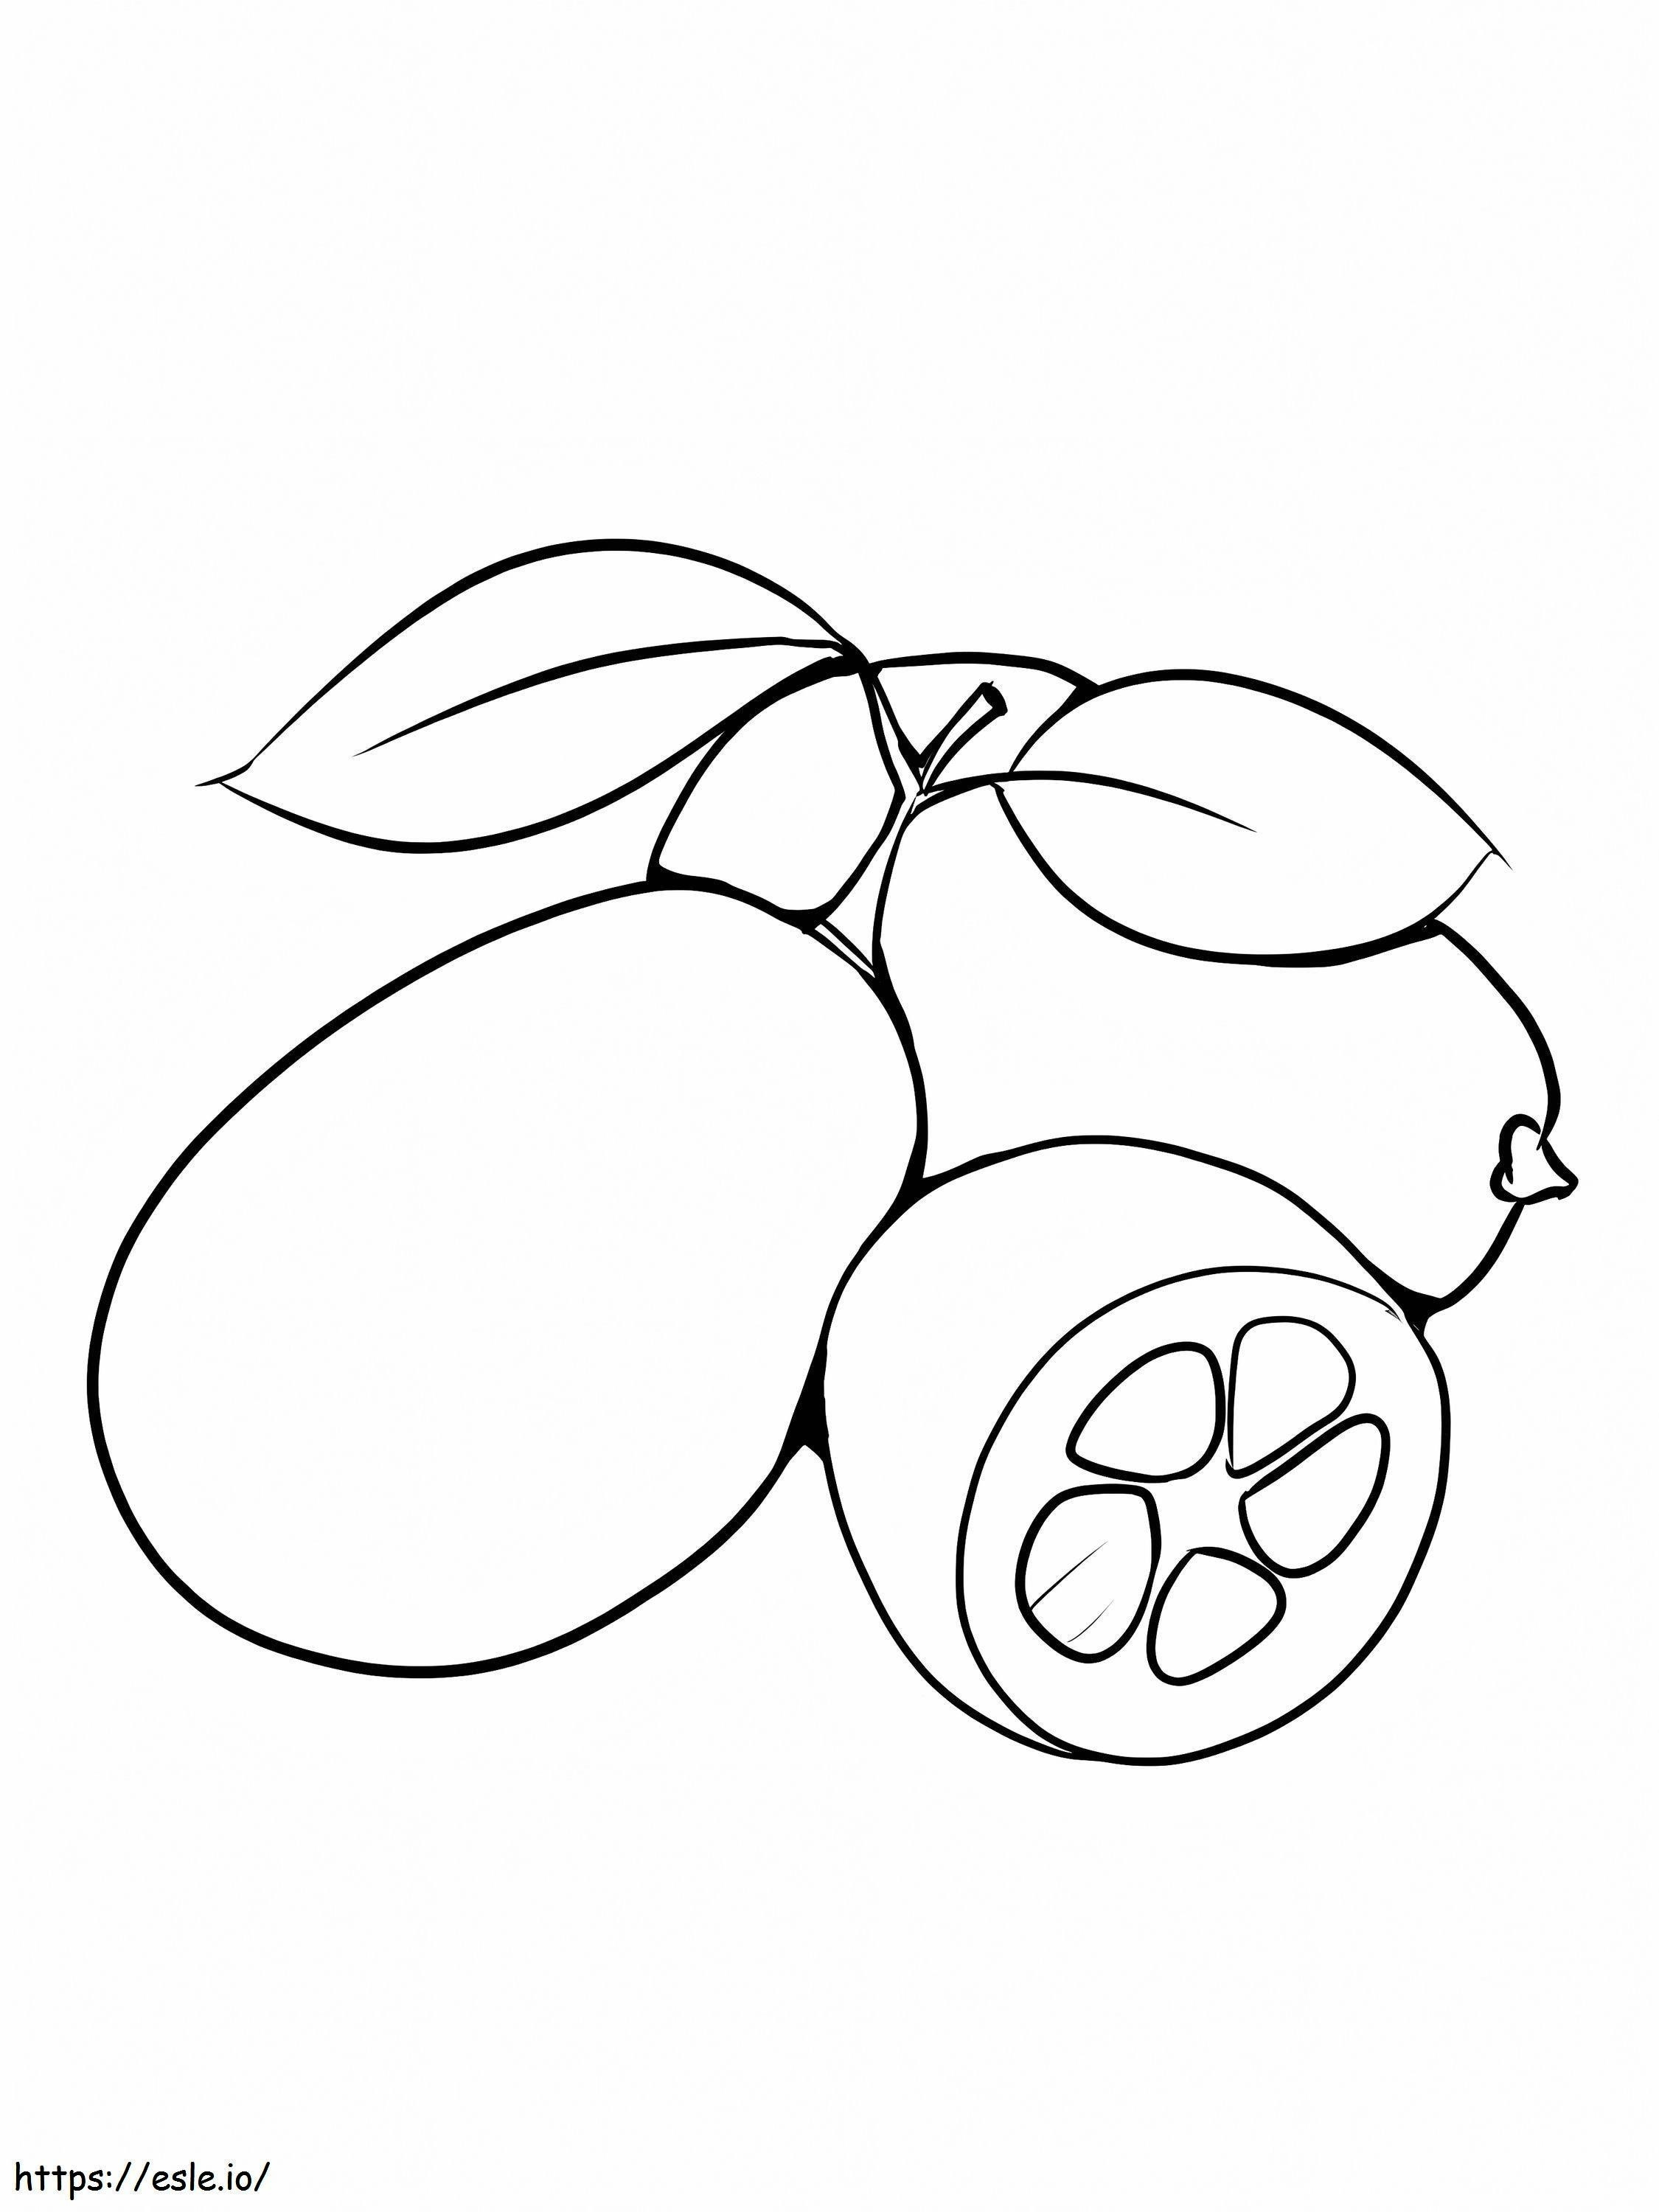 Coloriage Kumquat simple à imprimer dessin